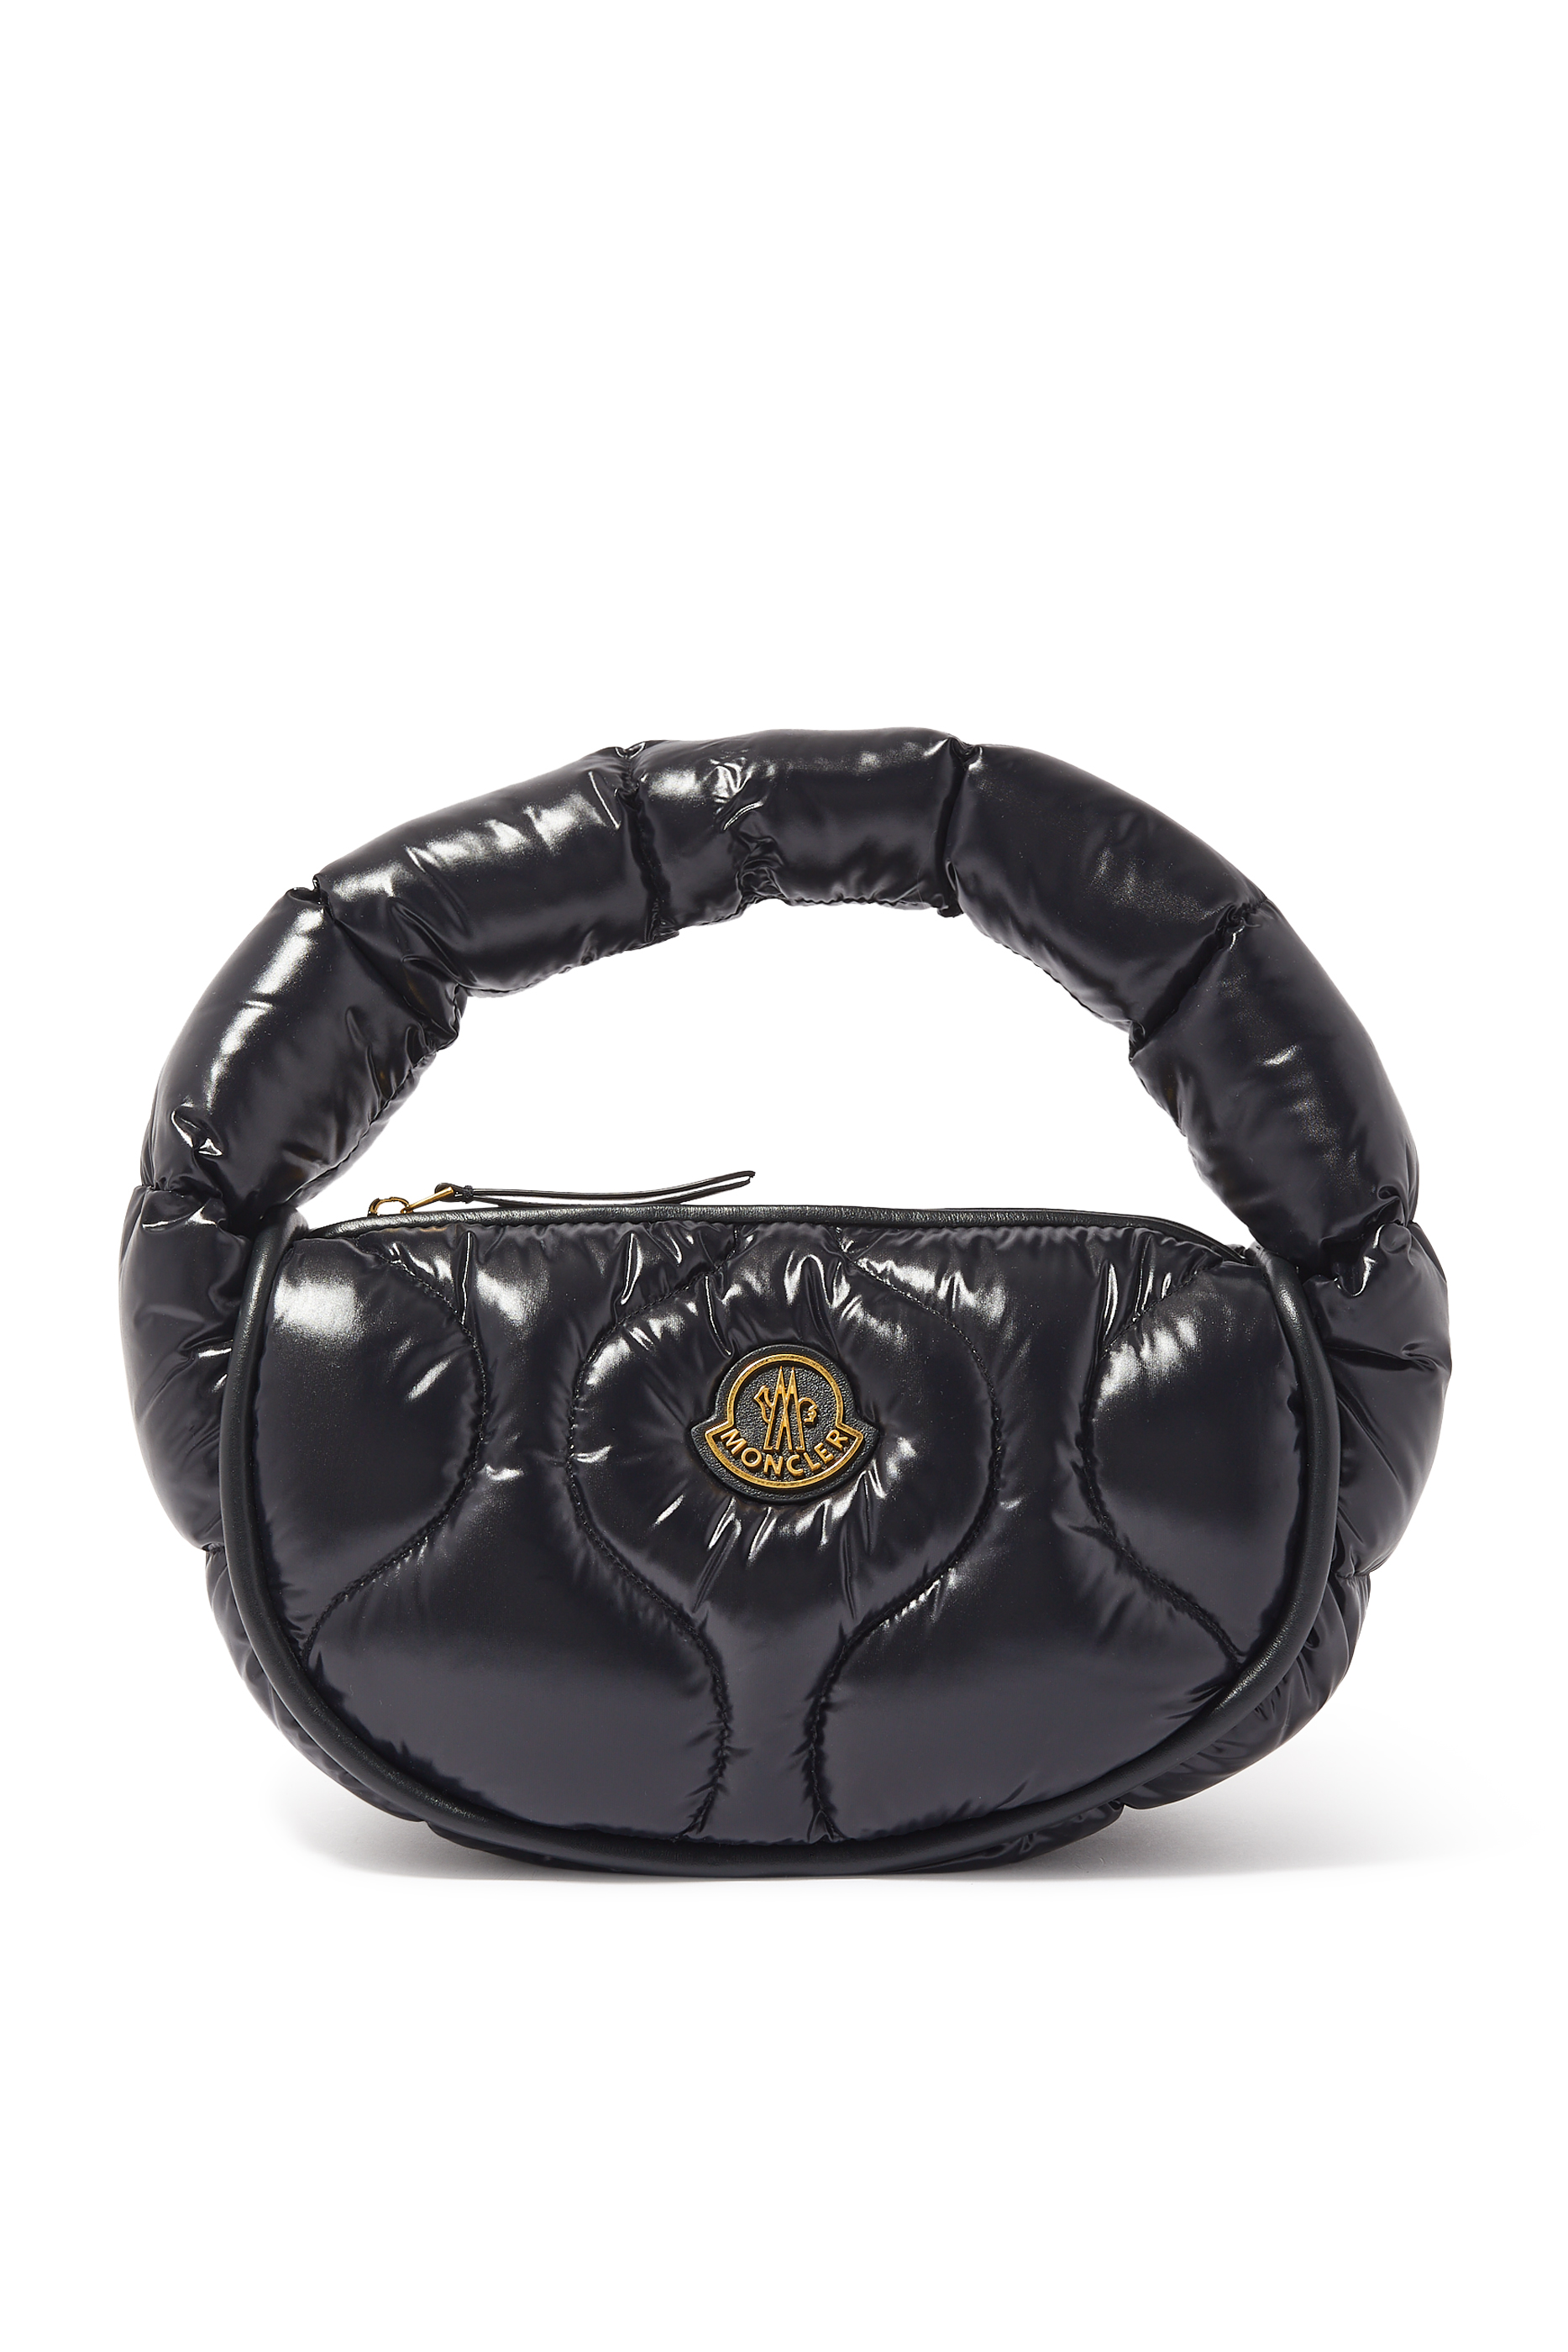 Buy Moncler Delilah Hobo Bag for Womens | Bloomingdale's UAE